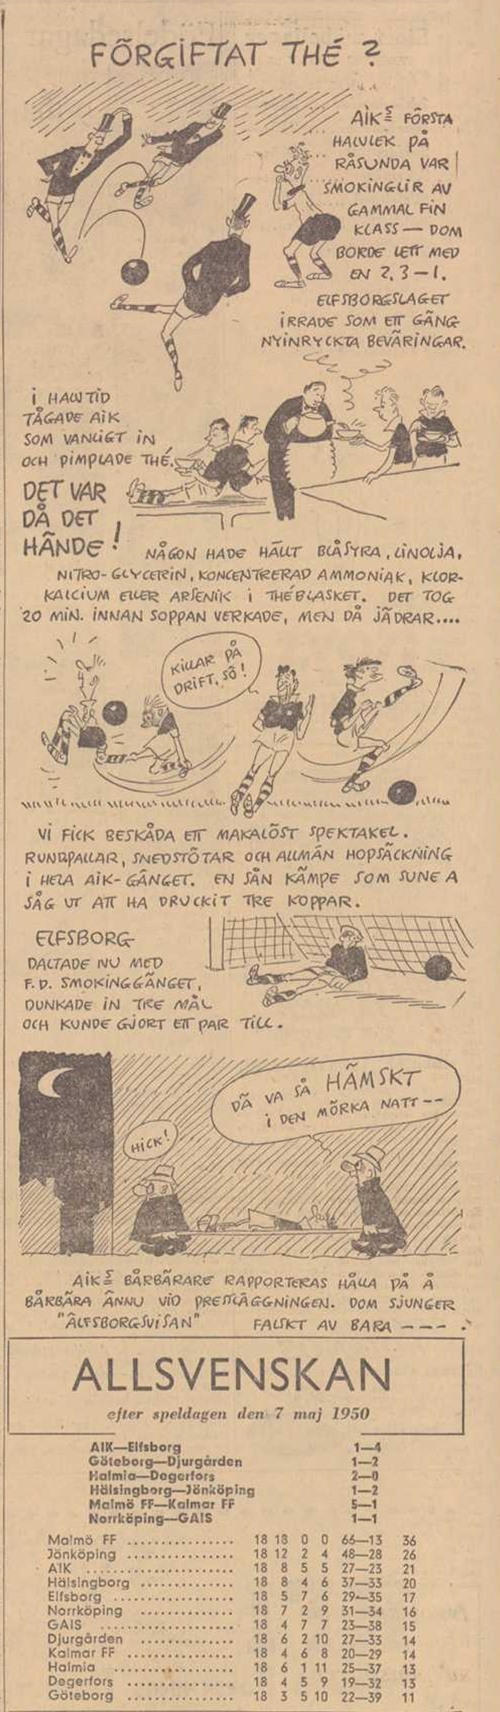 Sunday 7 May 1950  AIK - IF Elfsborg 1-4 (1-?)  Råsunda Fotbollstadion, Solna